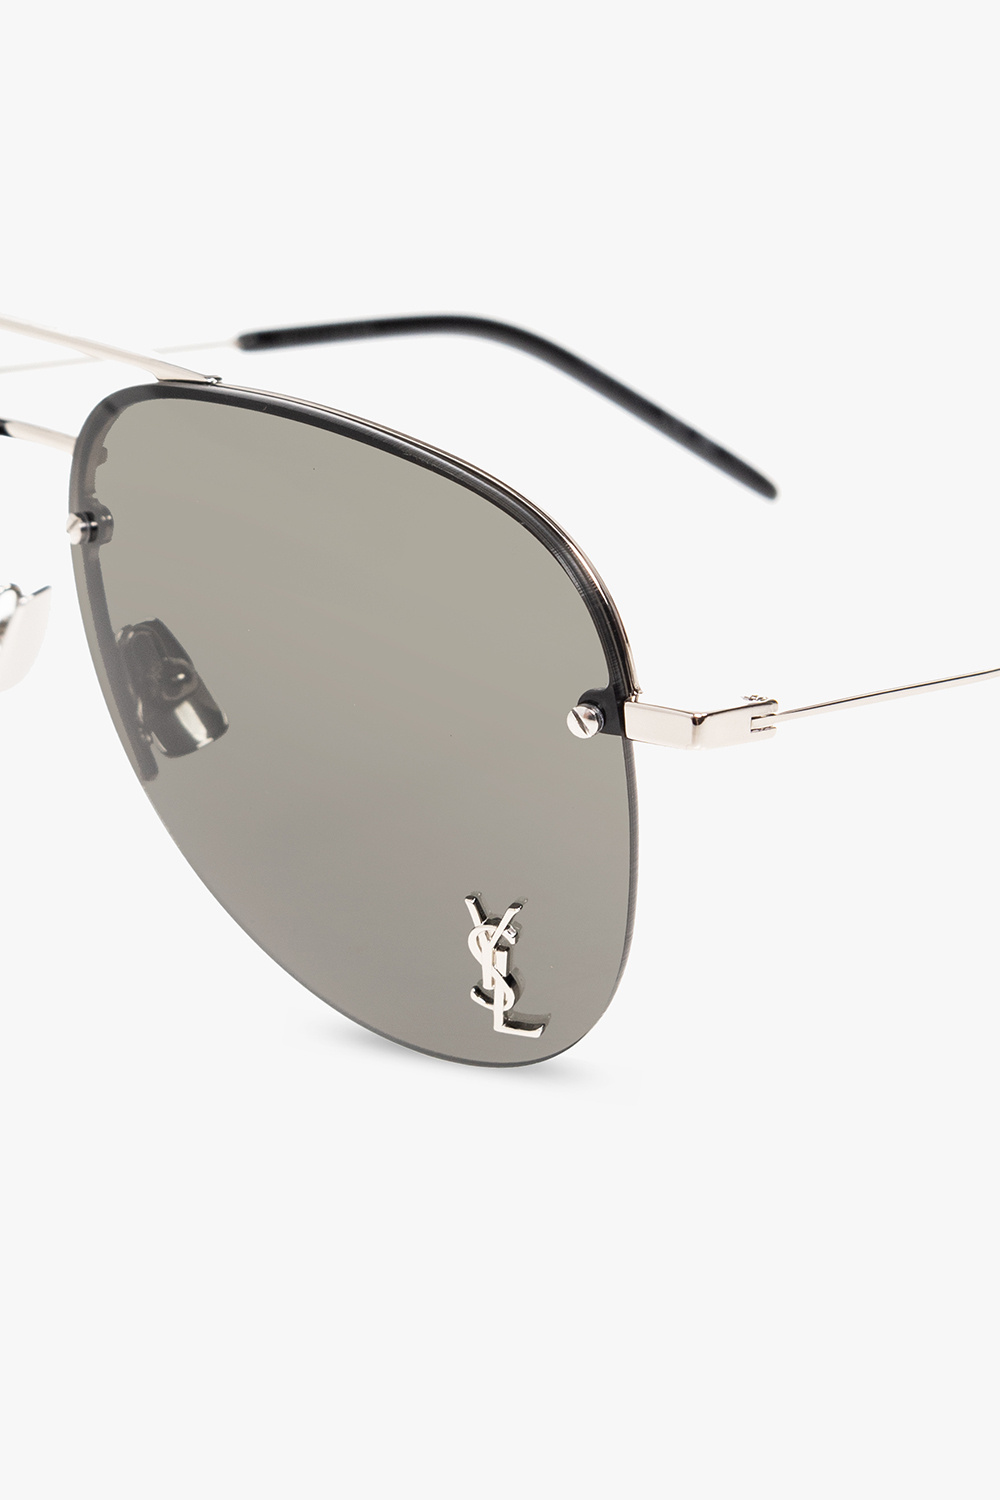 Saint Laurent 'CLASSIC 11 M' sunglasses | Men's Accessorie | Vitkac